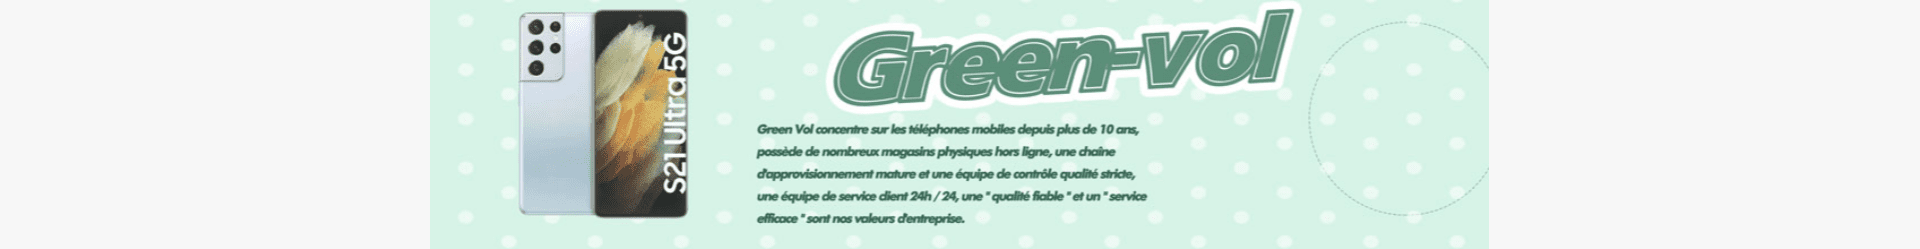 Green-vol